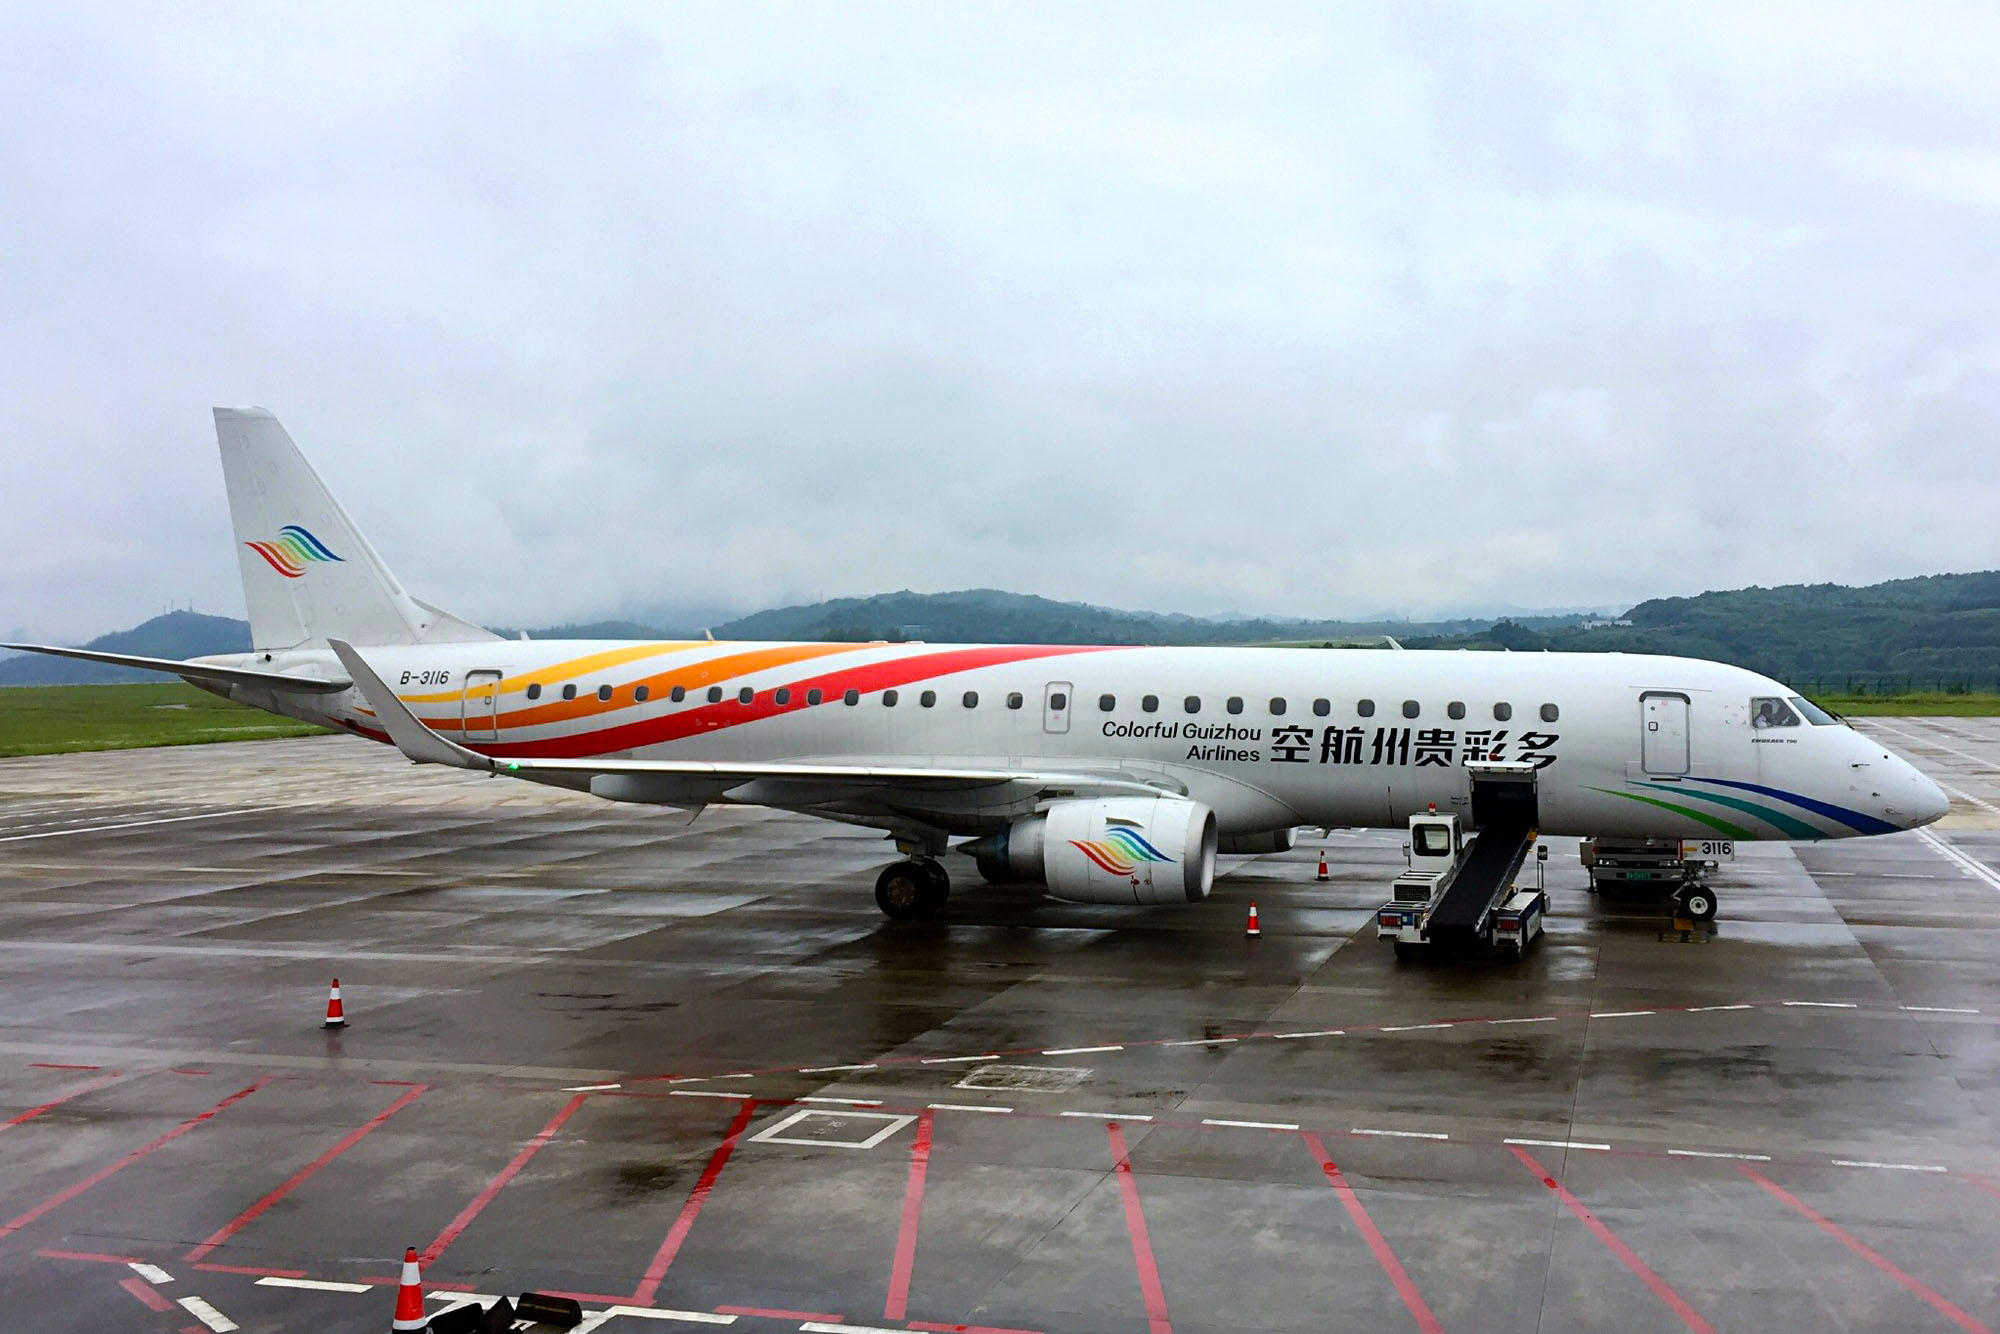 贵州航空新开上深航线,宁波机场规划获批,阿航重启酒廊淋浴服务